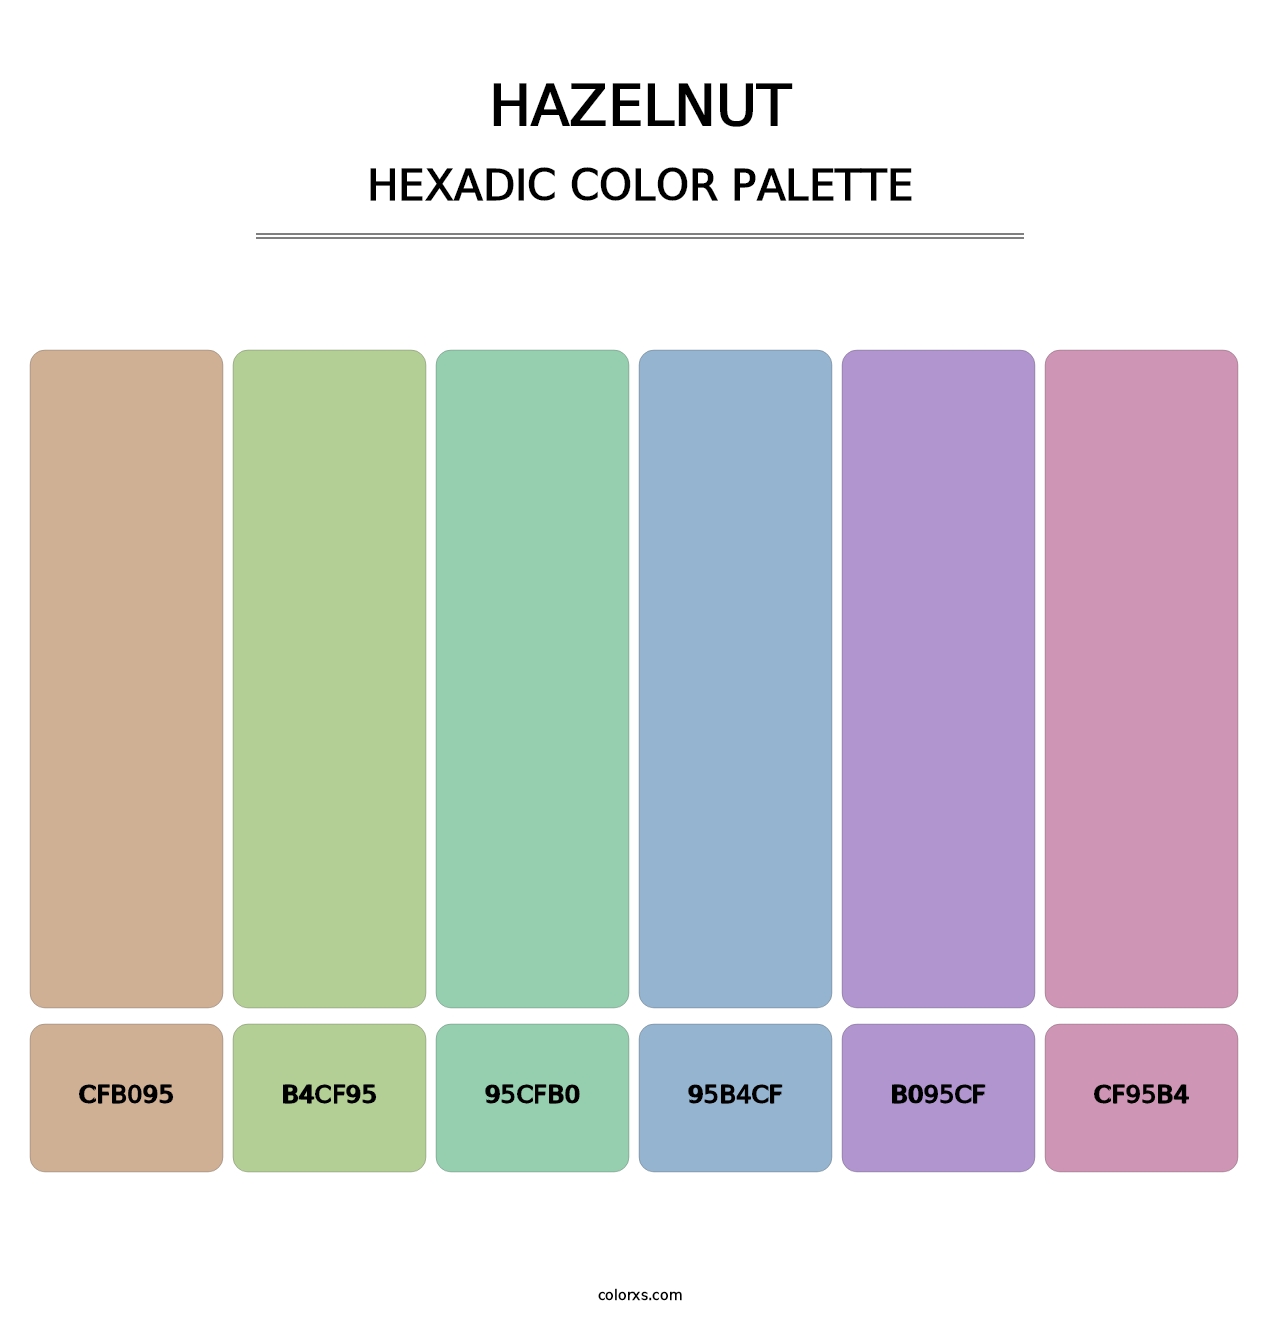 Hazelnut - Hexadic Color Palette